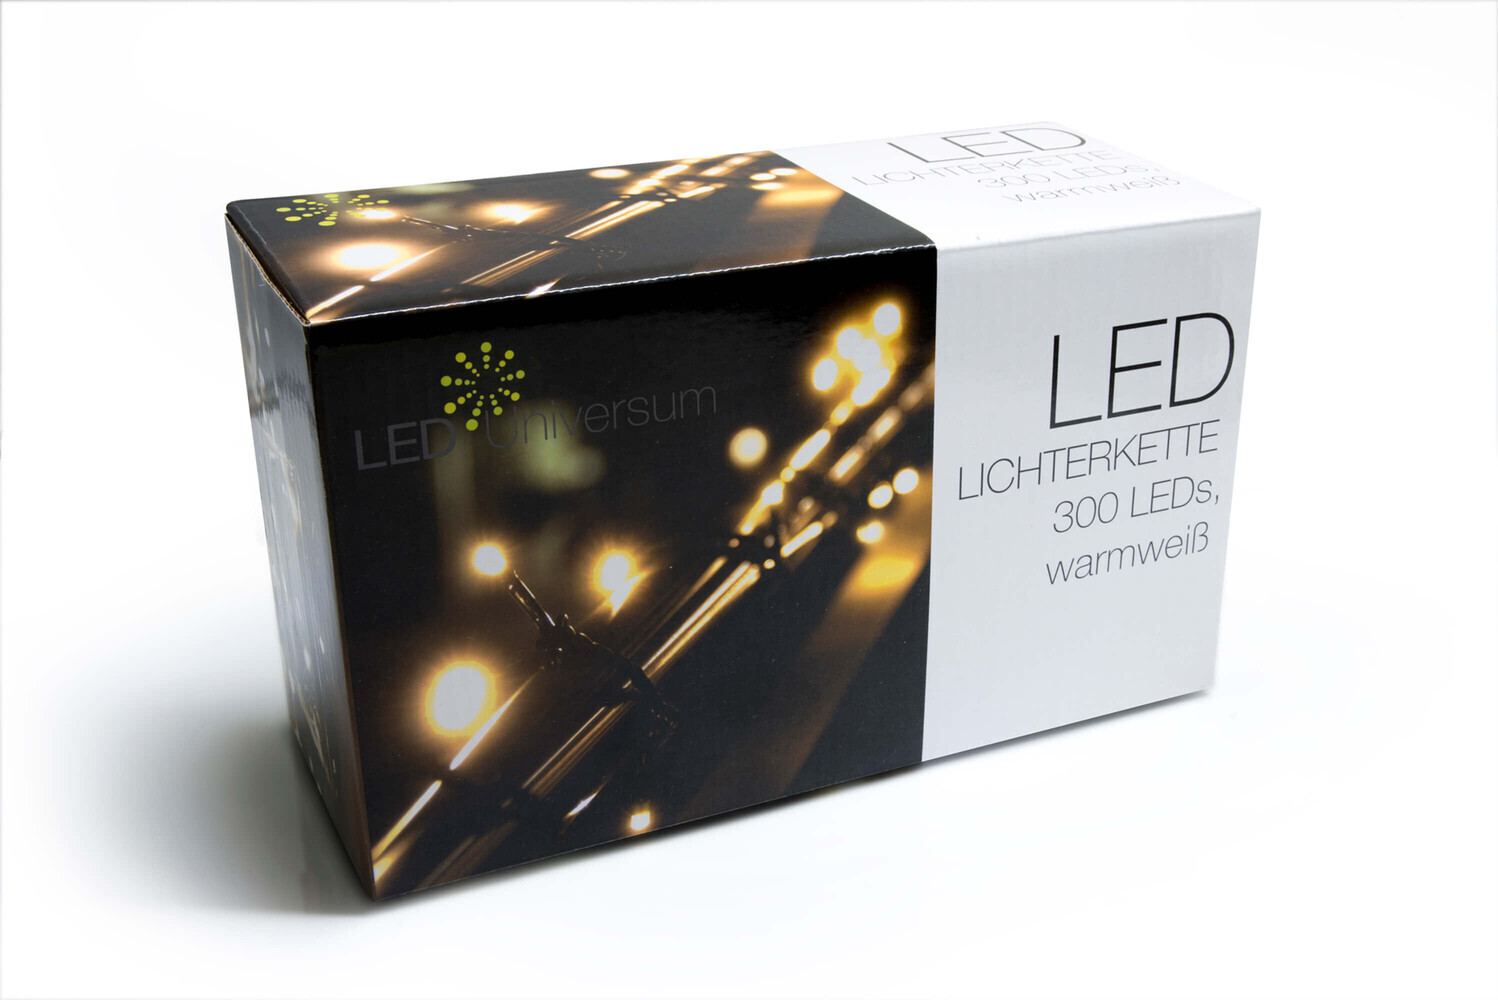 Hochwertige LED Lichterkette warmweiß mit 24m Länge und 300 LEDs von LED Universum